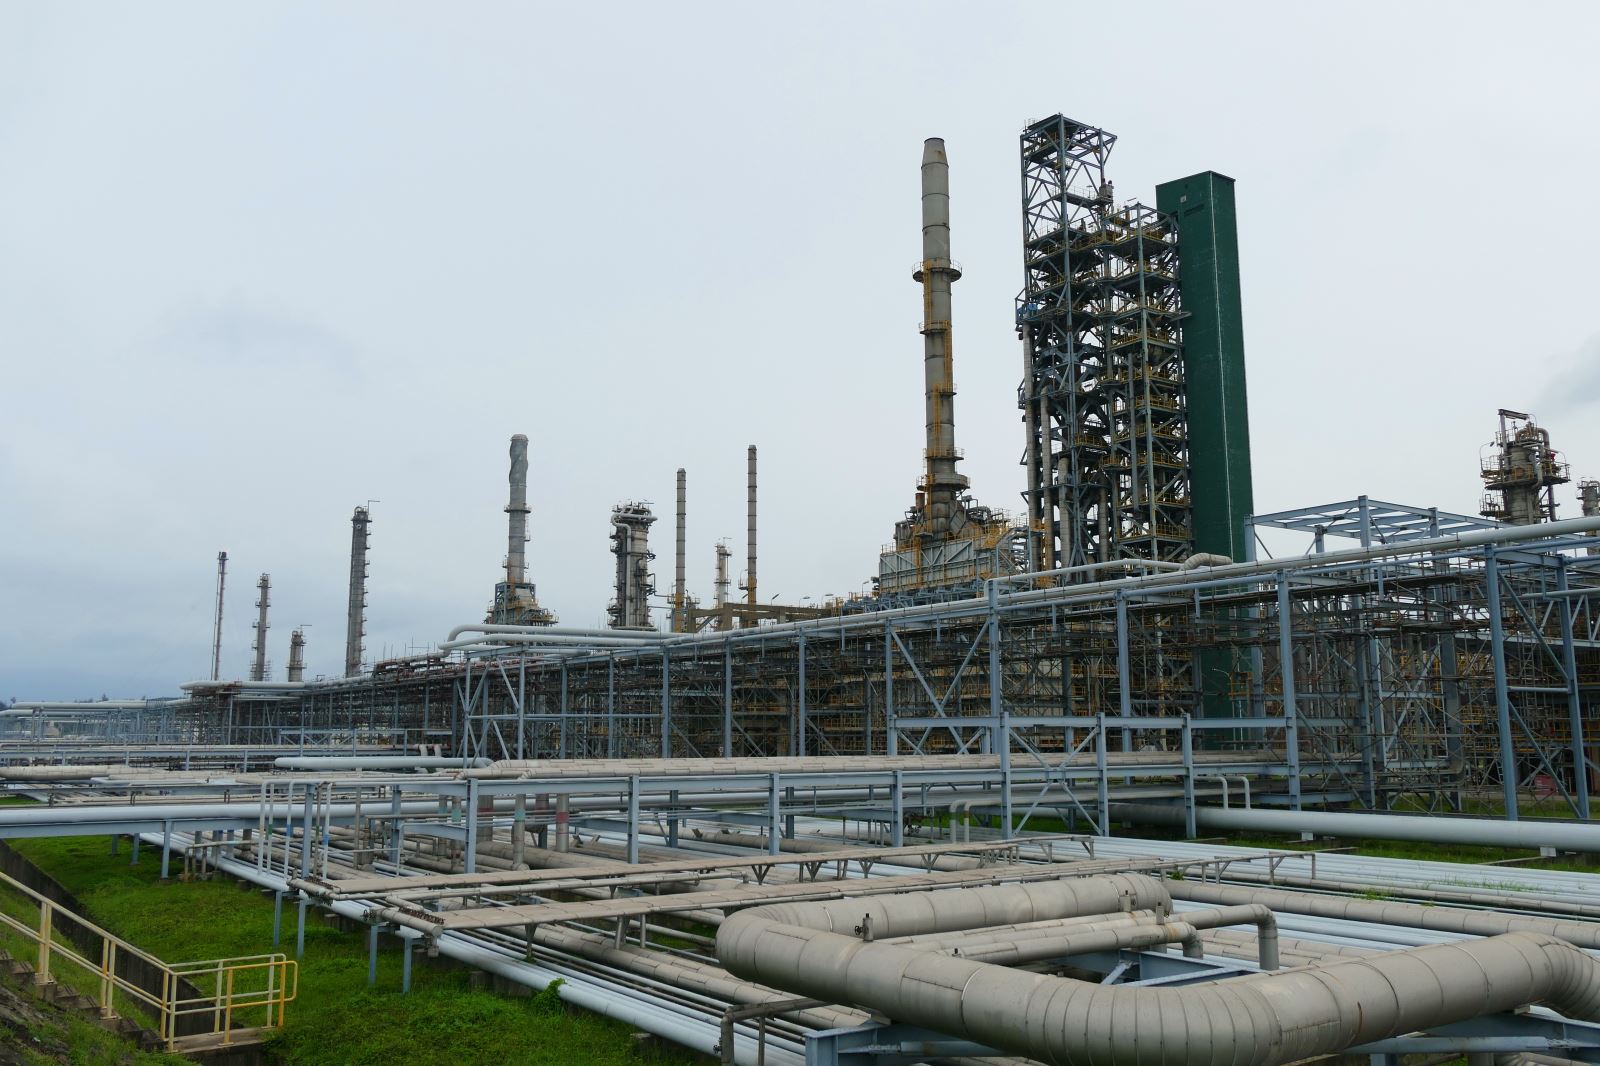 Nhà máy Lọc dầu Dung Quất: Sẵn sàng ứng phó với siêu bão số 4 -Noru